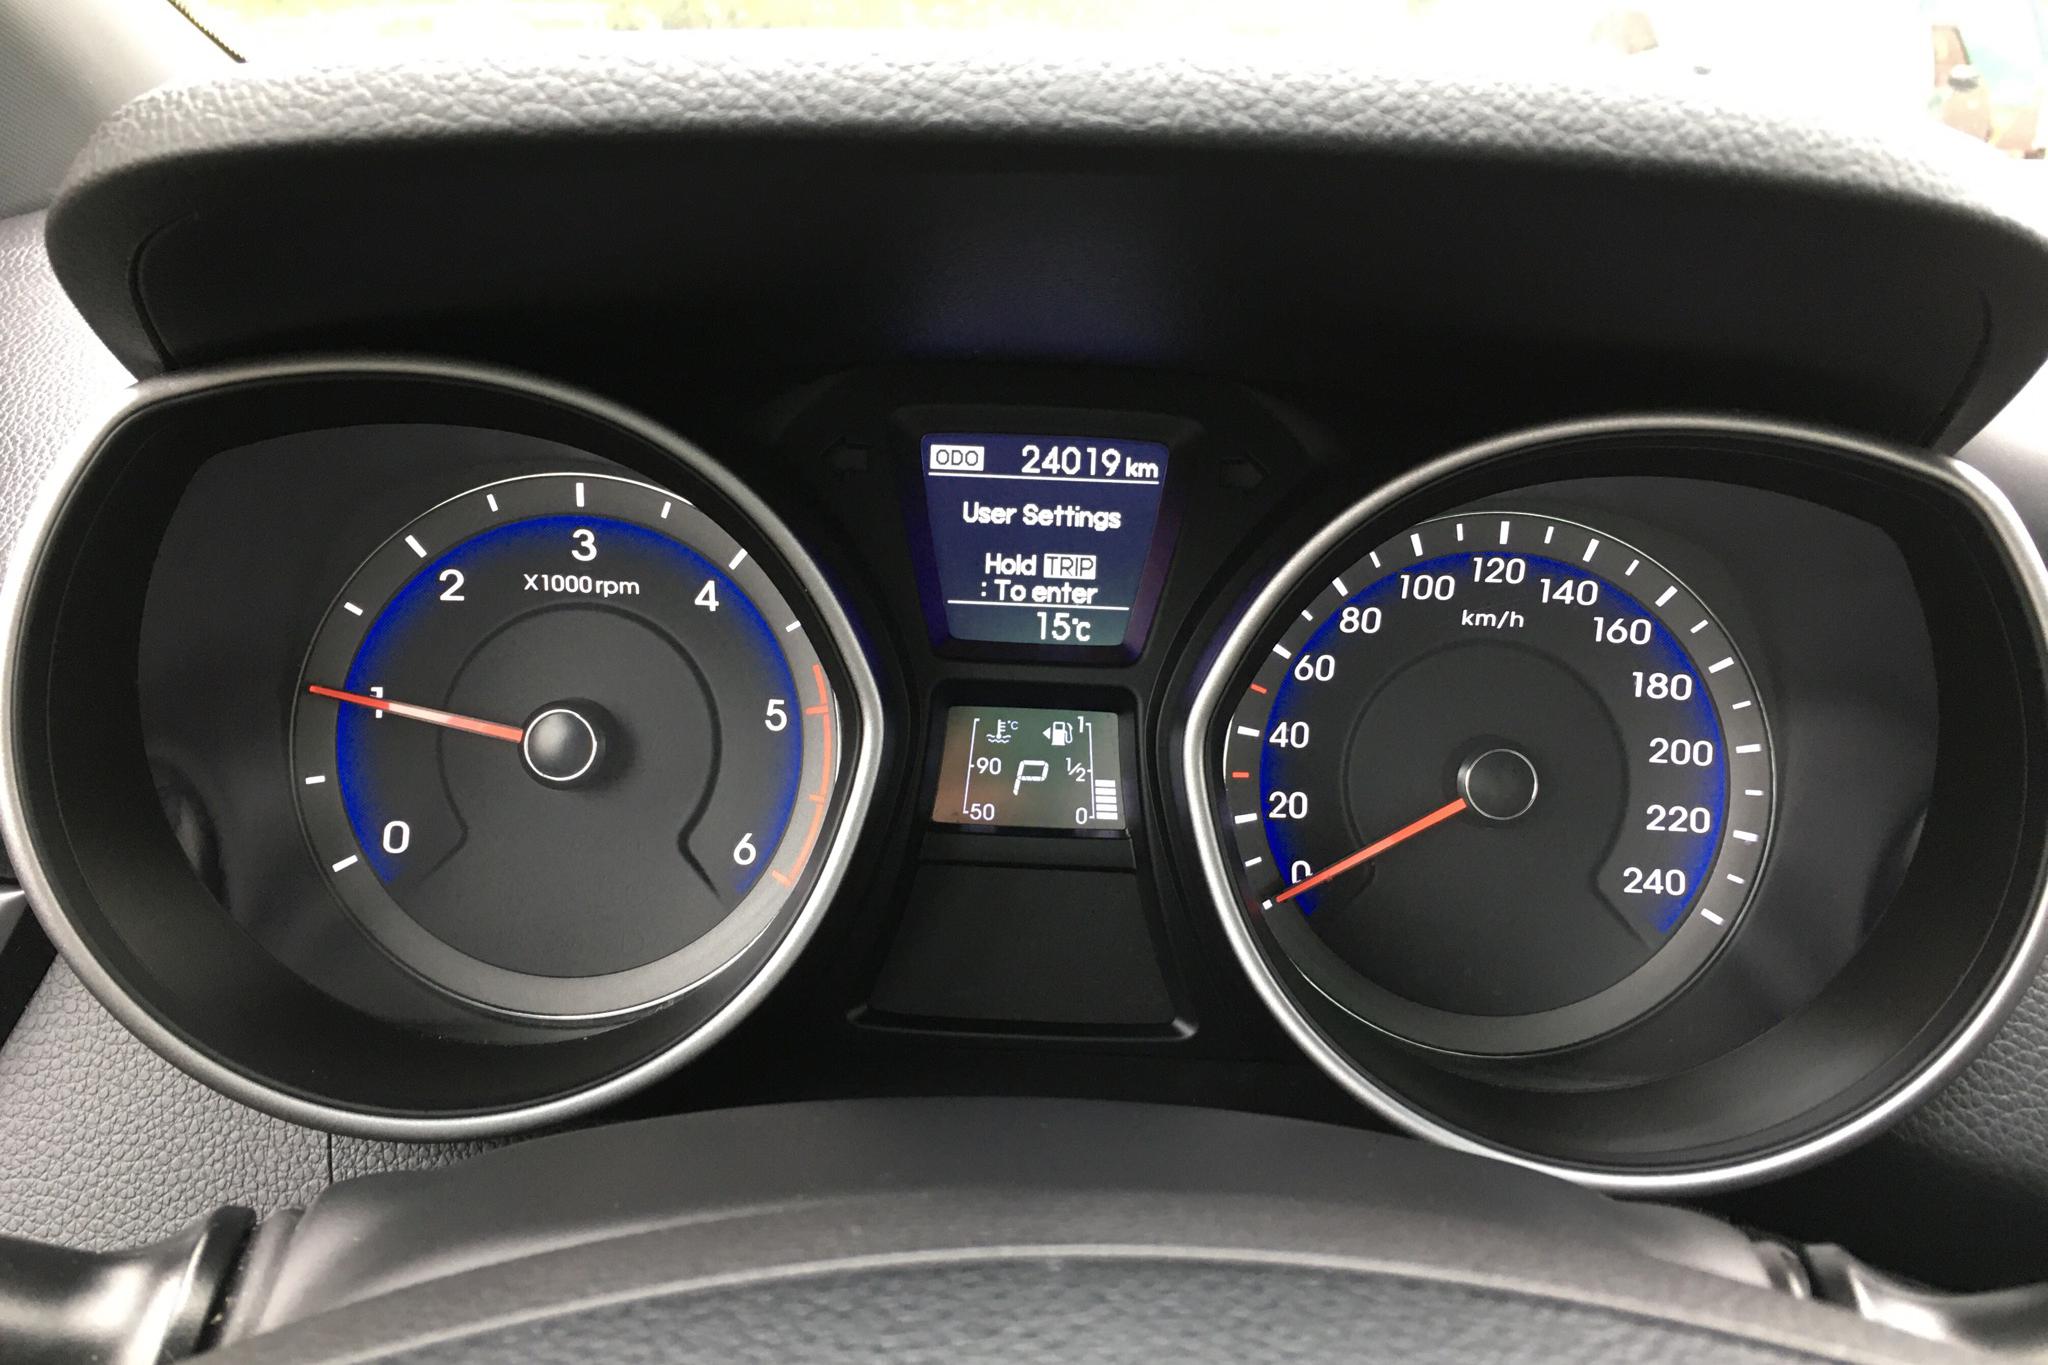 Hyundai i30 1.6 D 5dr (136hk) - 24 010 km - Automatic - white - 2017